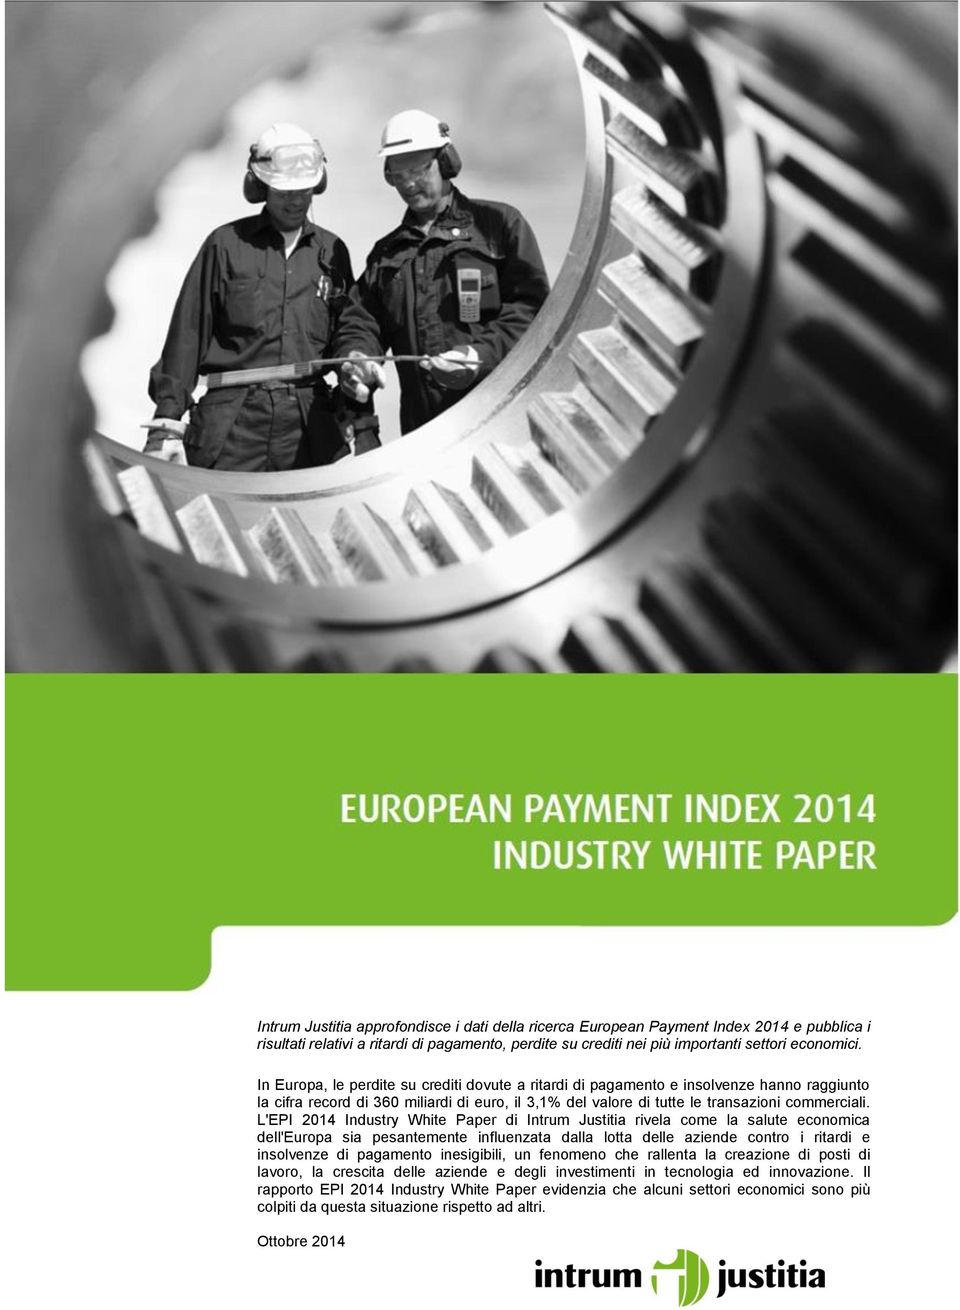 L'EPI 2014 Industry White Paper di Intrum Justitia rivela come la salute economica dell'europa sia pesantemente influenzata dalla lotta delle aziende contro i ritardi e insolvenze di pagamento